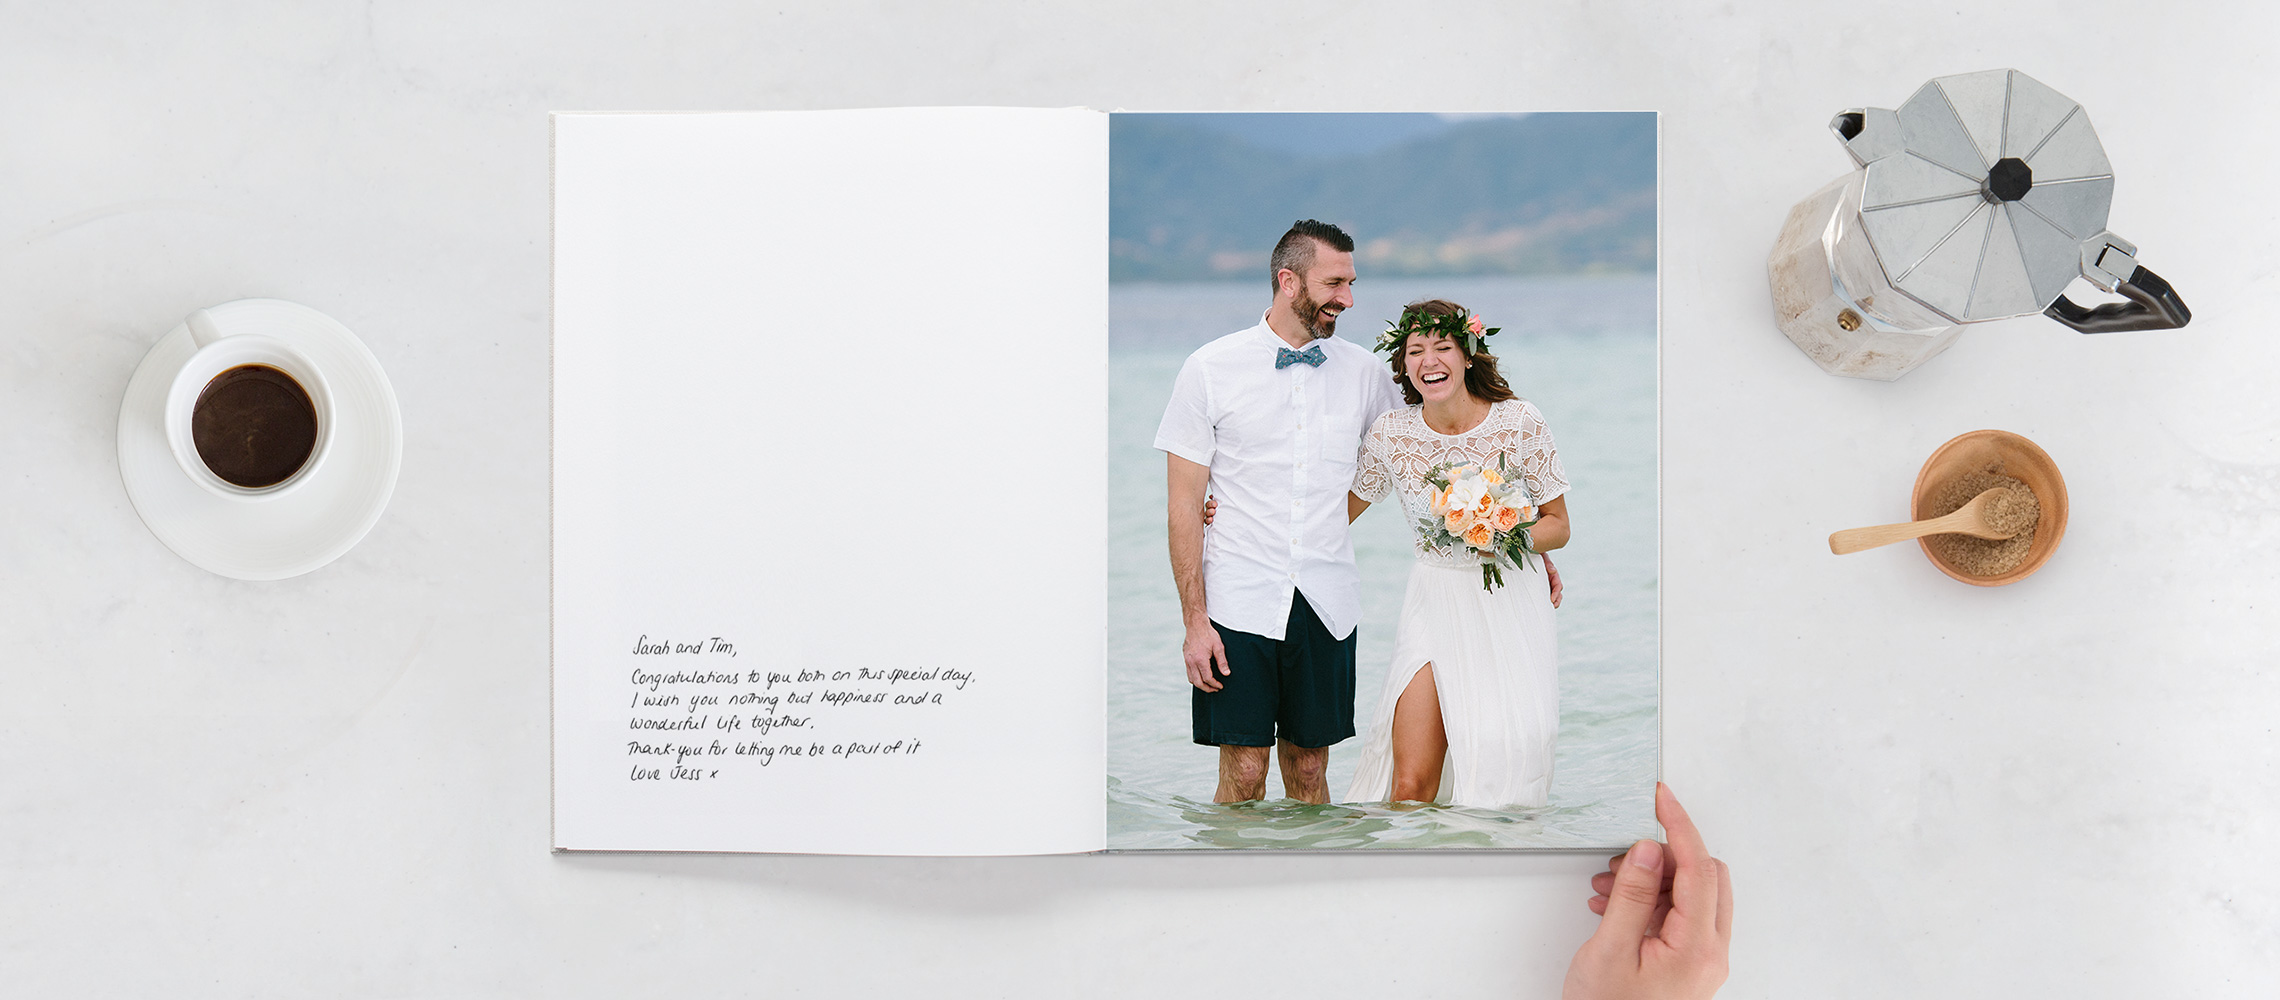 Livre d'or ouvert avec des mariés souriants dans l'eau et une inscription sur la page blanche.